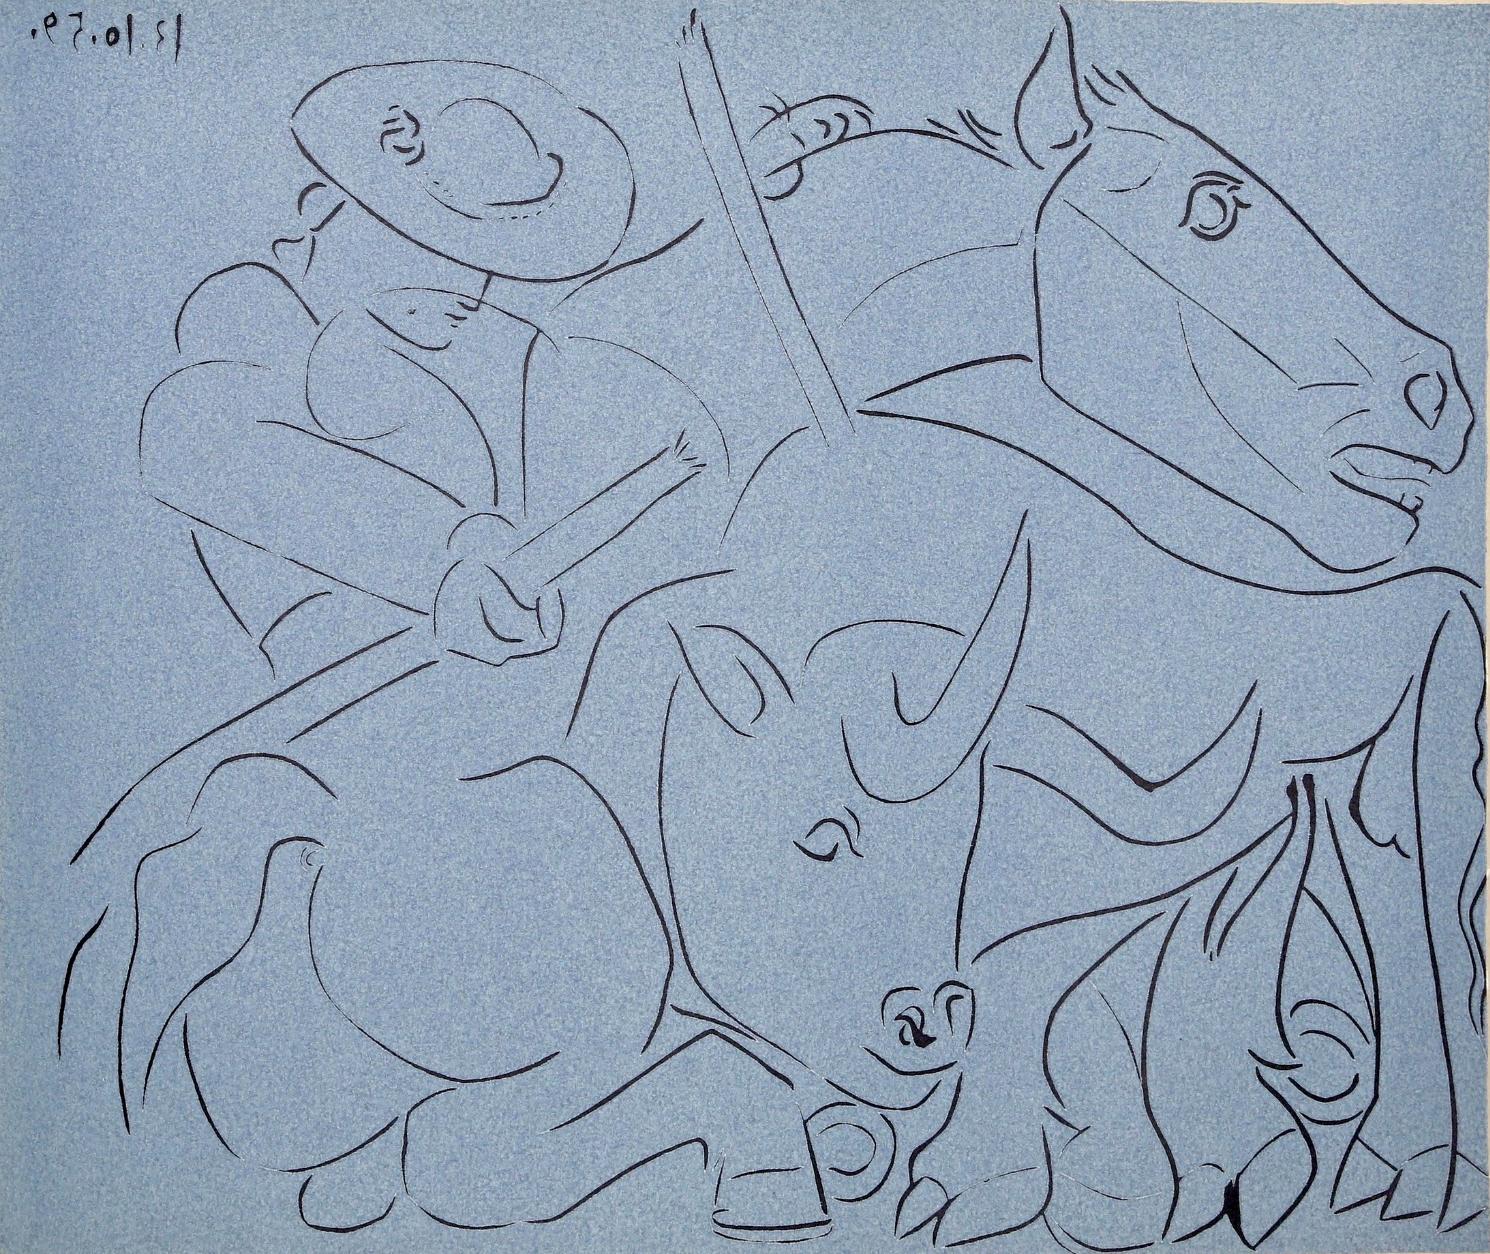 Picasso, Broken Lance, Pablo Picasso-Linogravures (après)